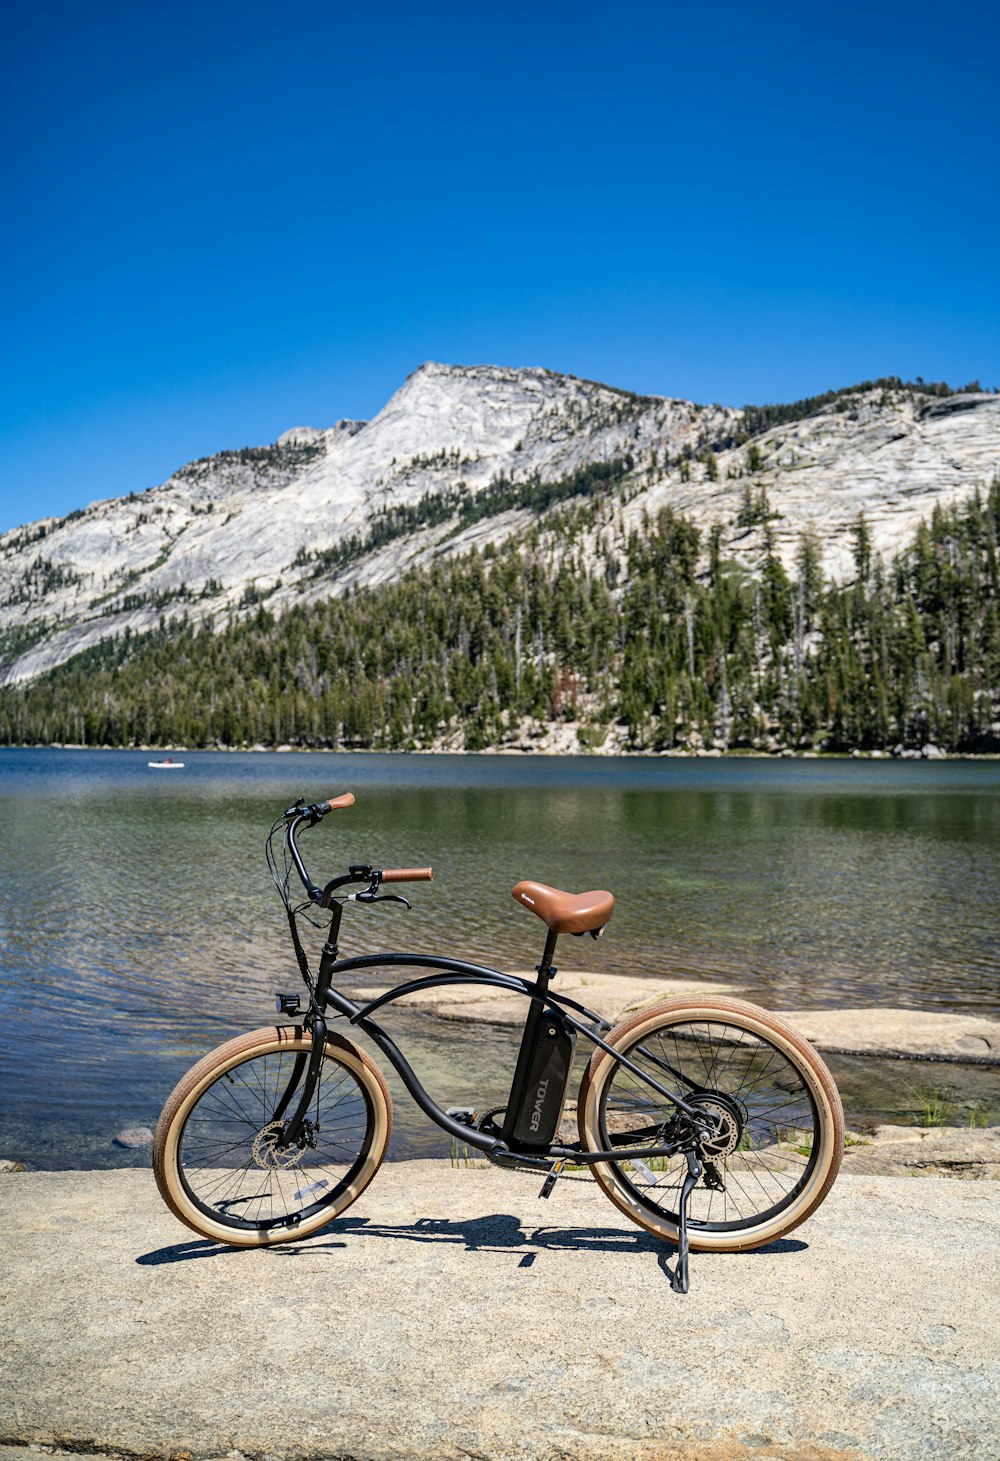 Bicicleta negra en muelle de madera marrón cerca del lago durante el día